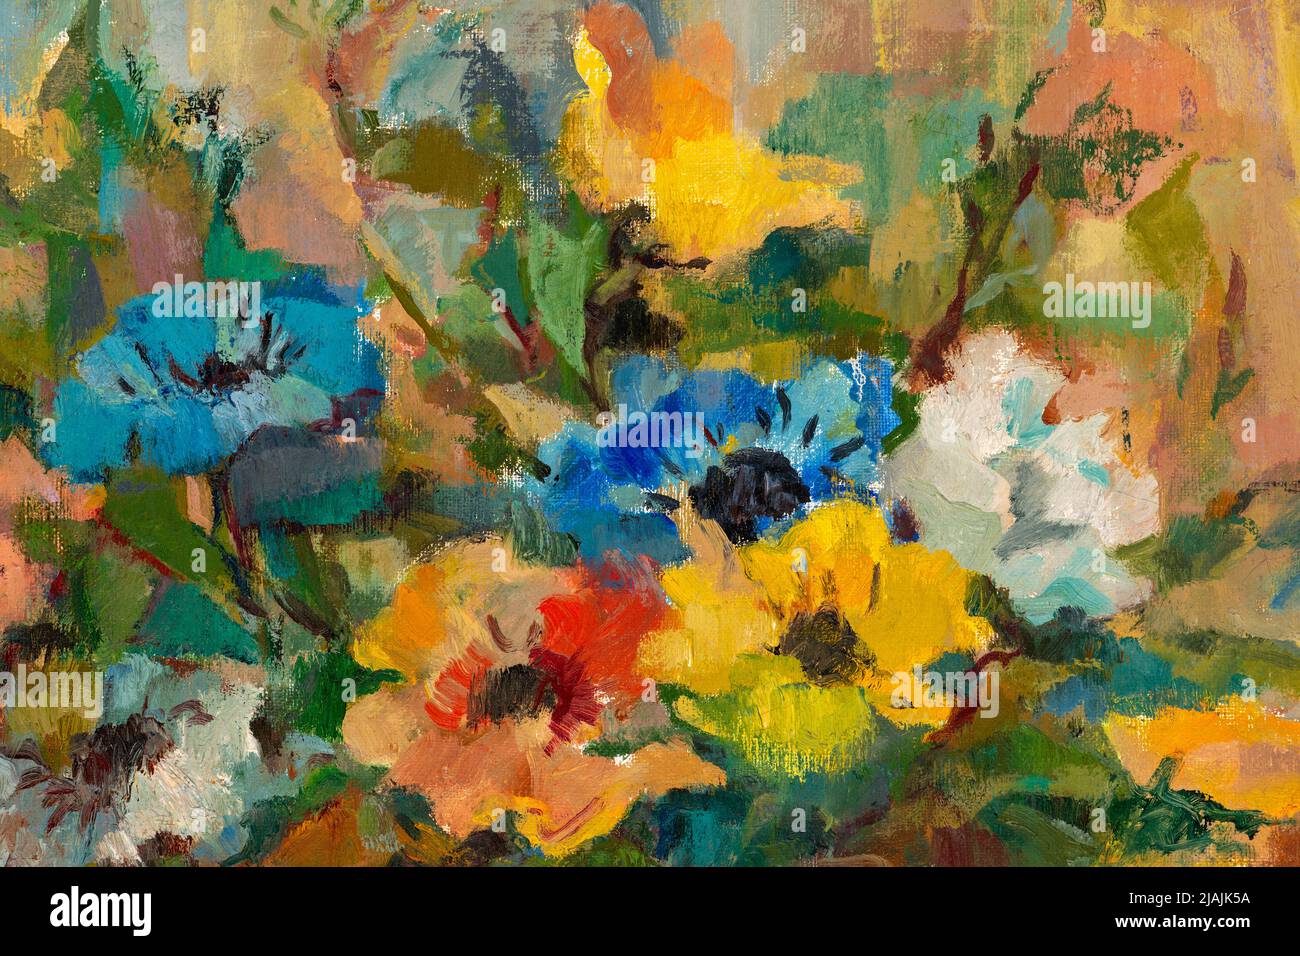 Nahaufnahme eines Ölgemäldes im impressionistischen Stil, das einen Strauß pastellfarbener Blumen darstellt. Stockfoto